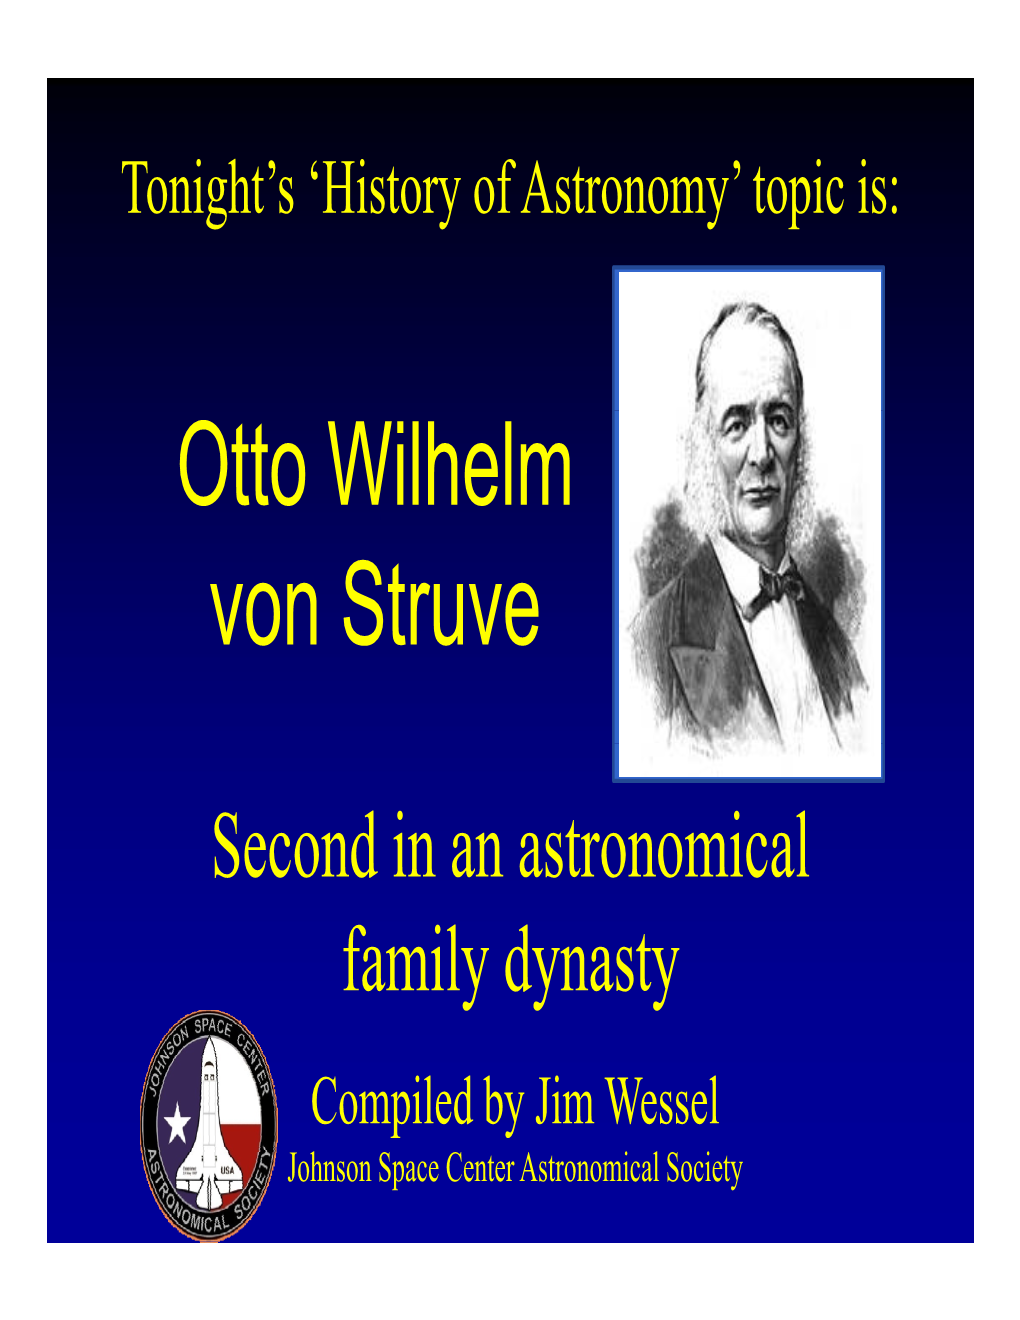 Otto Wilhelm Von Struve